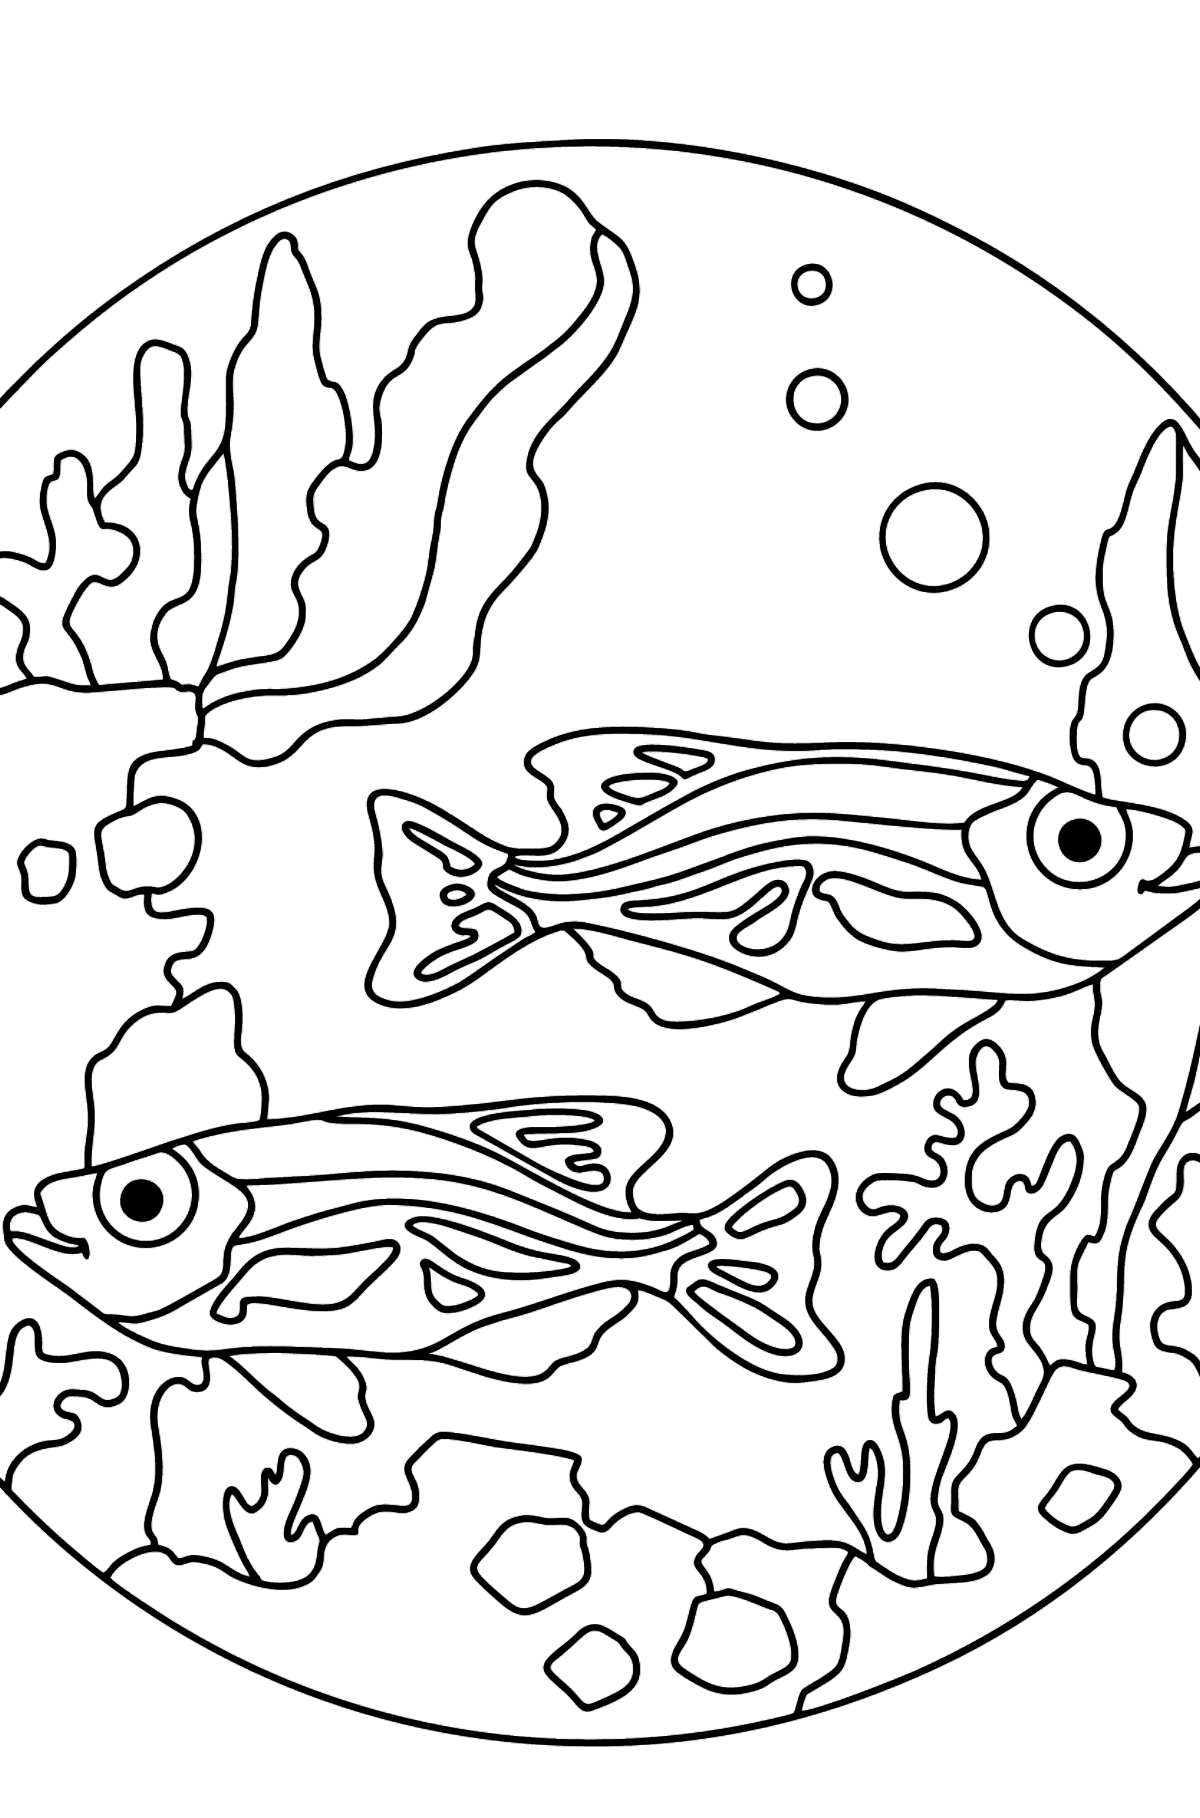 Ausmalbild Fische im Aquarium - Malvorlagen für Kinder